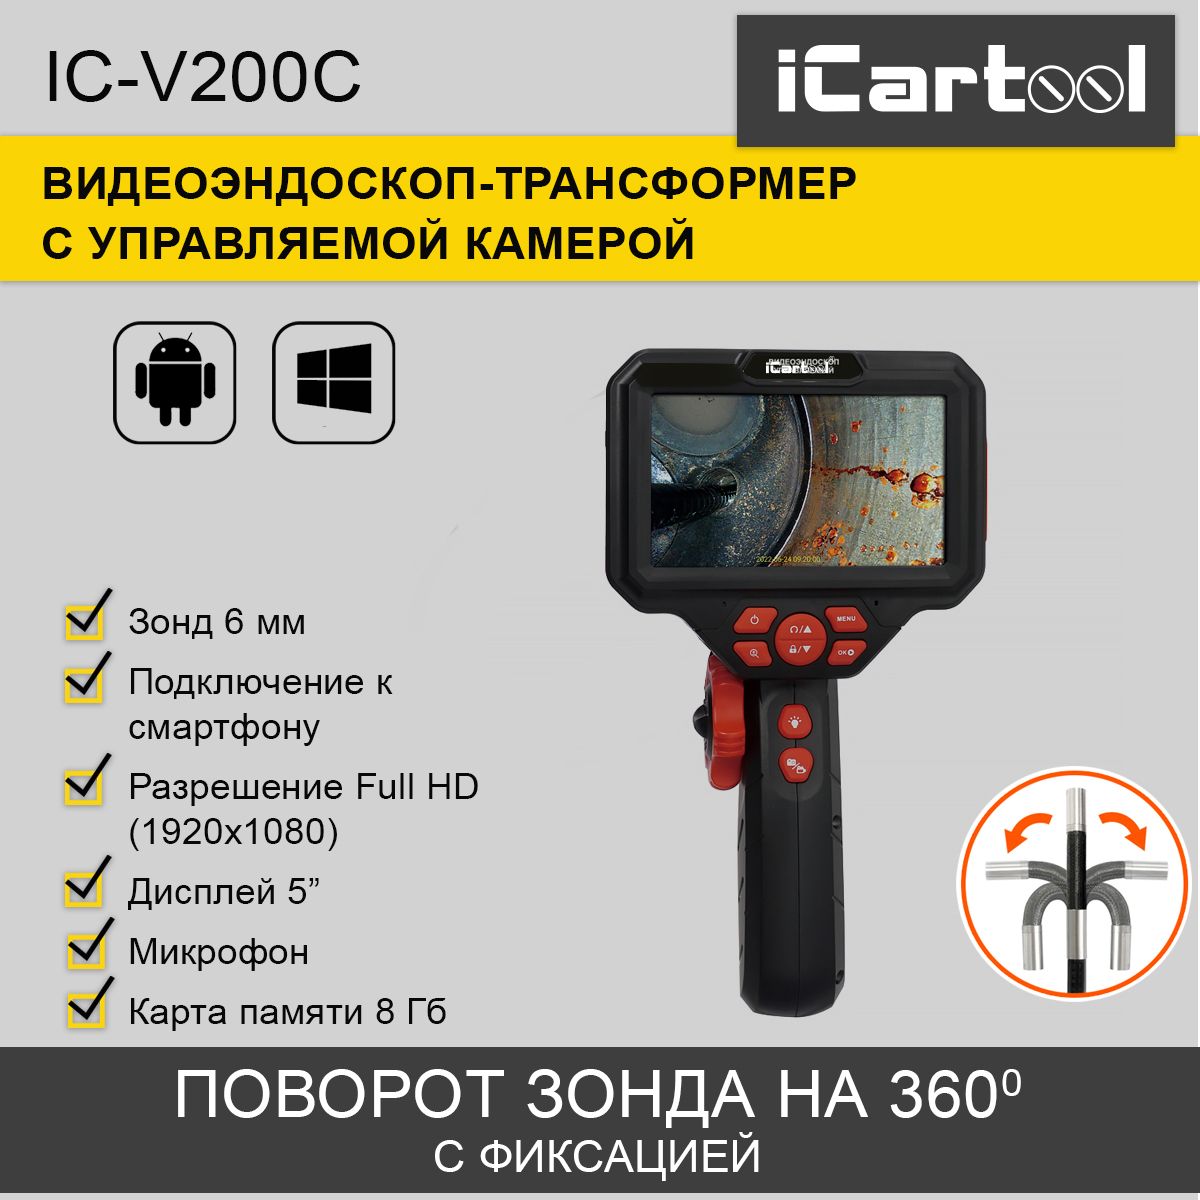 видеоэндоскоп управляемый icartool ic v200c экран 5 2мп 1920x1080 1м 6мм 360 Видеоэндоскоп управляемый, iCartool IC-V200C экран 5